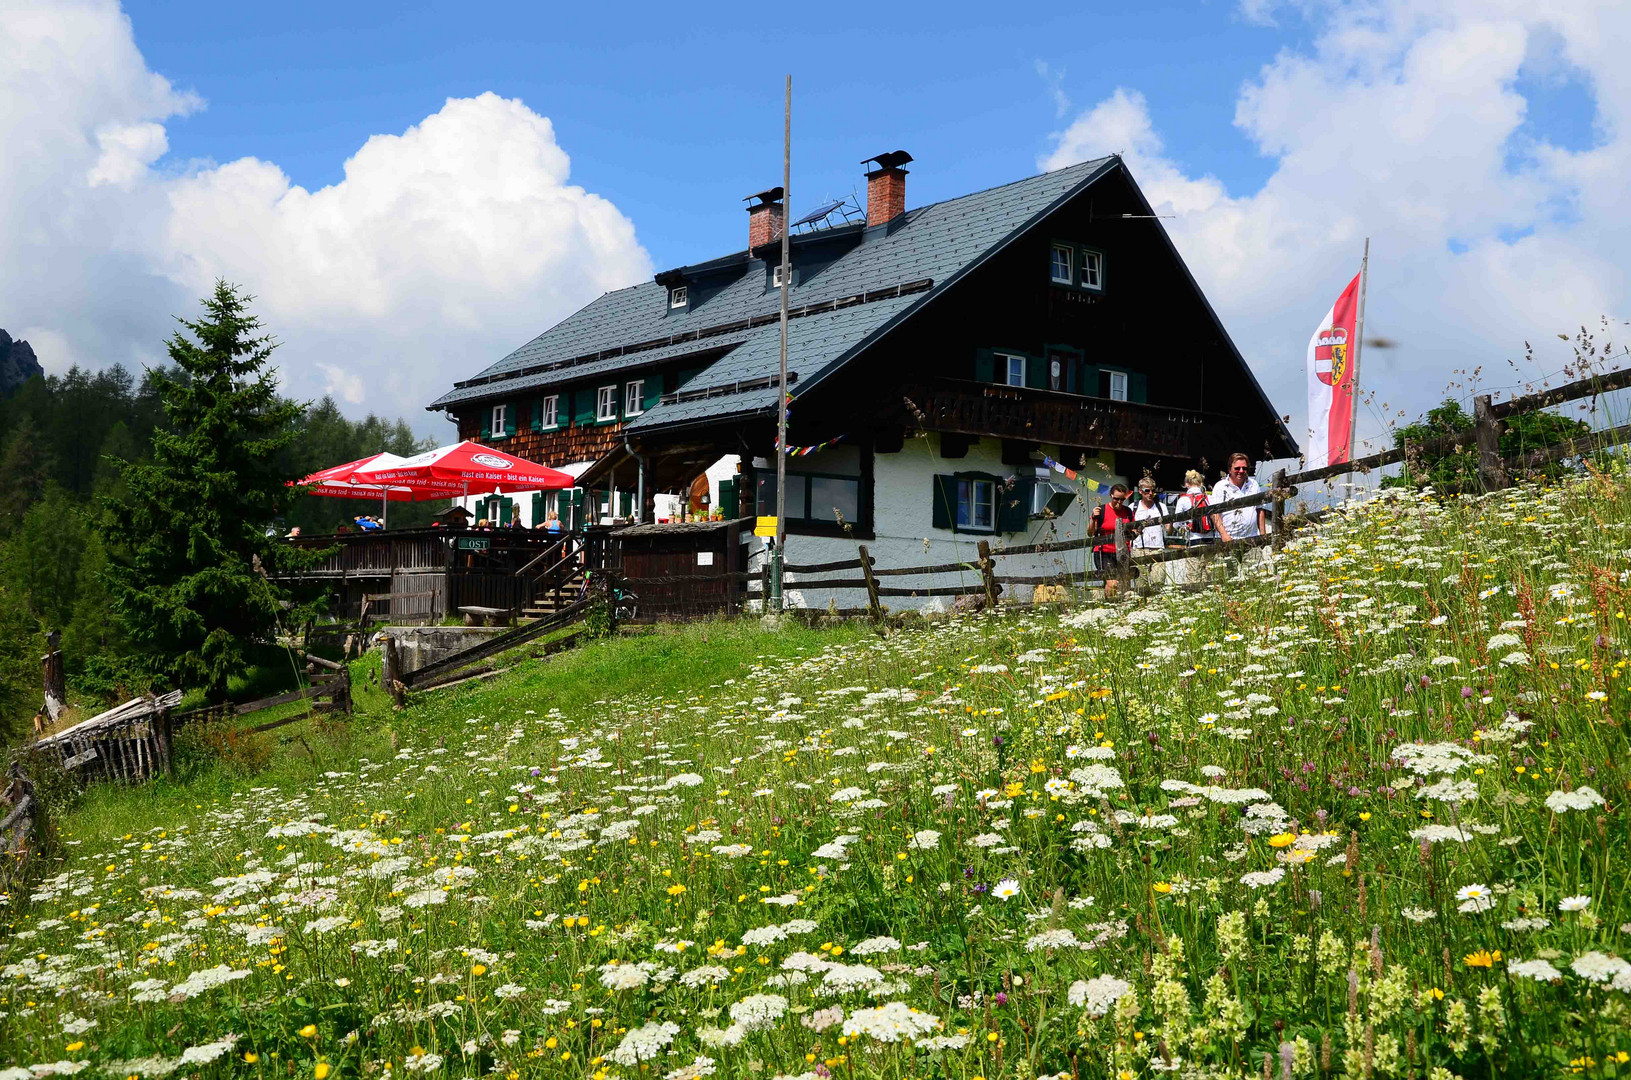 Ziel erreicht - die Ostpreussenhütte in Werfen